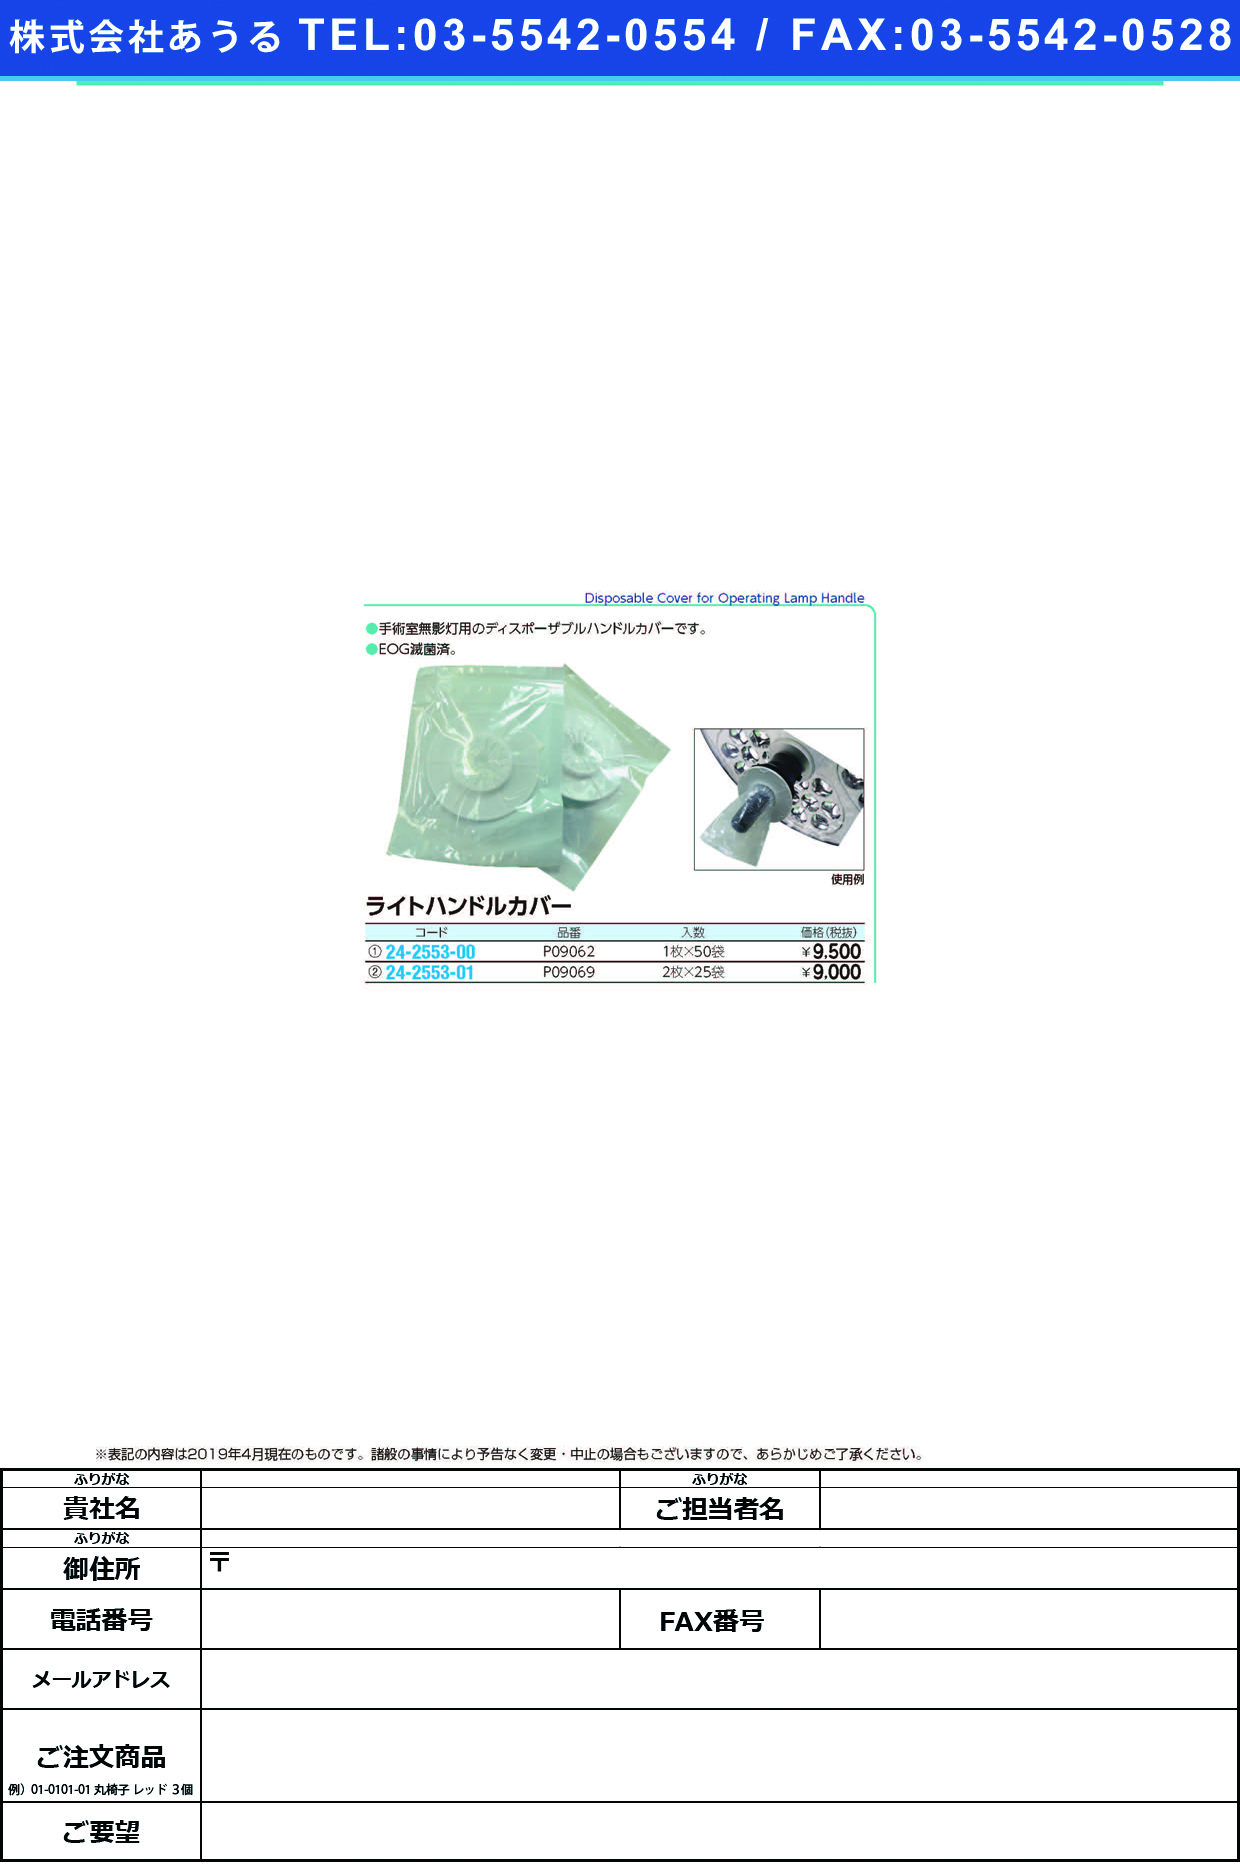 (24-2553-00)ライトハンドルカバー P09062(1ﾏｲX50ﾌｸﾛ) ﾗｲﾄﾊﾝﾄﾞﾙｶﾊﾞｰ【1箱単位】【2019年カタログ商品】